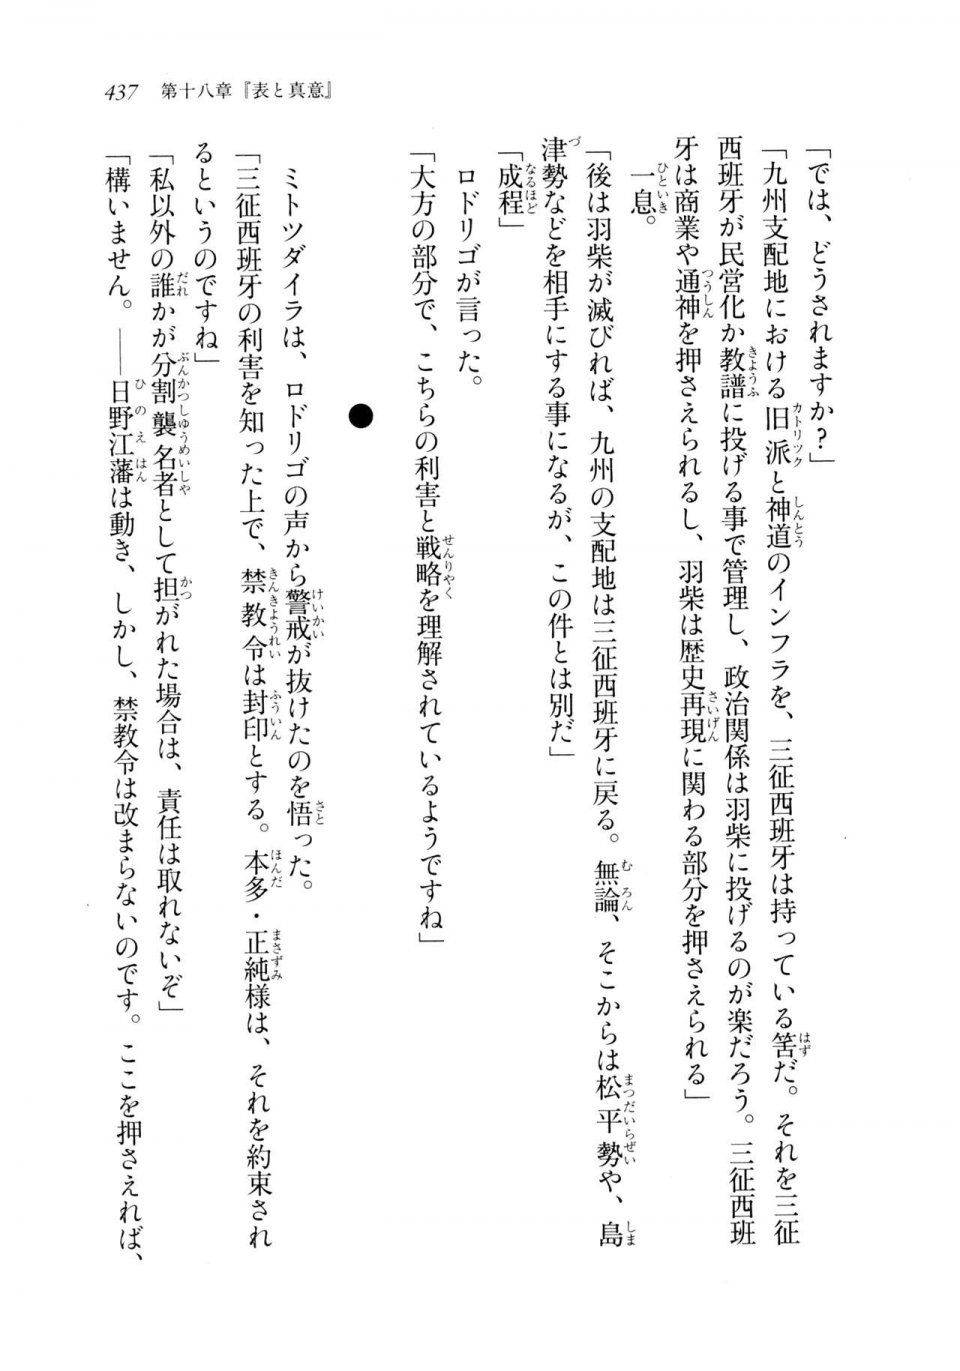 Kyoukai Senjou no Horizon LN Sidestory Vol 2 - Photo #435